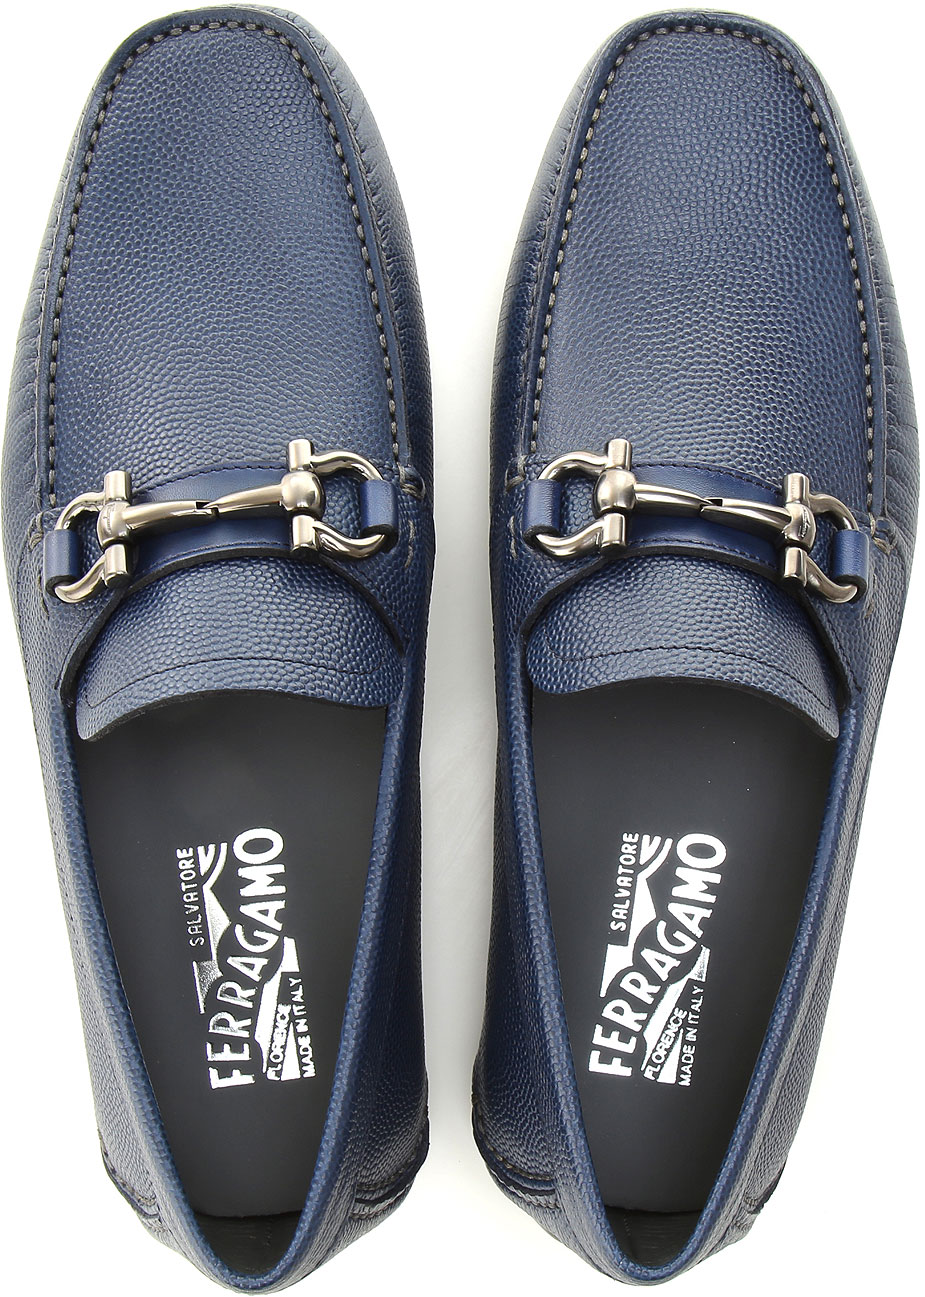 Mens Shoes Salvatore Ferragamo, Style code: 0671734-parigi-273671734